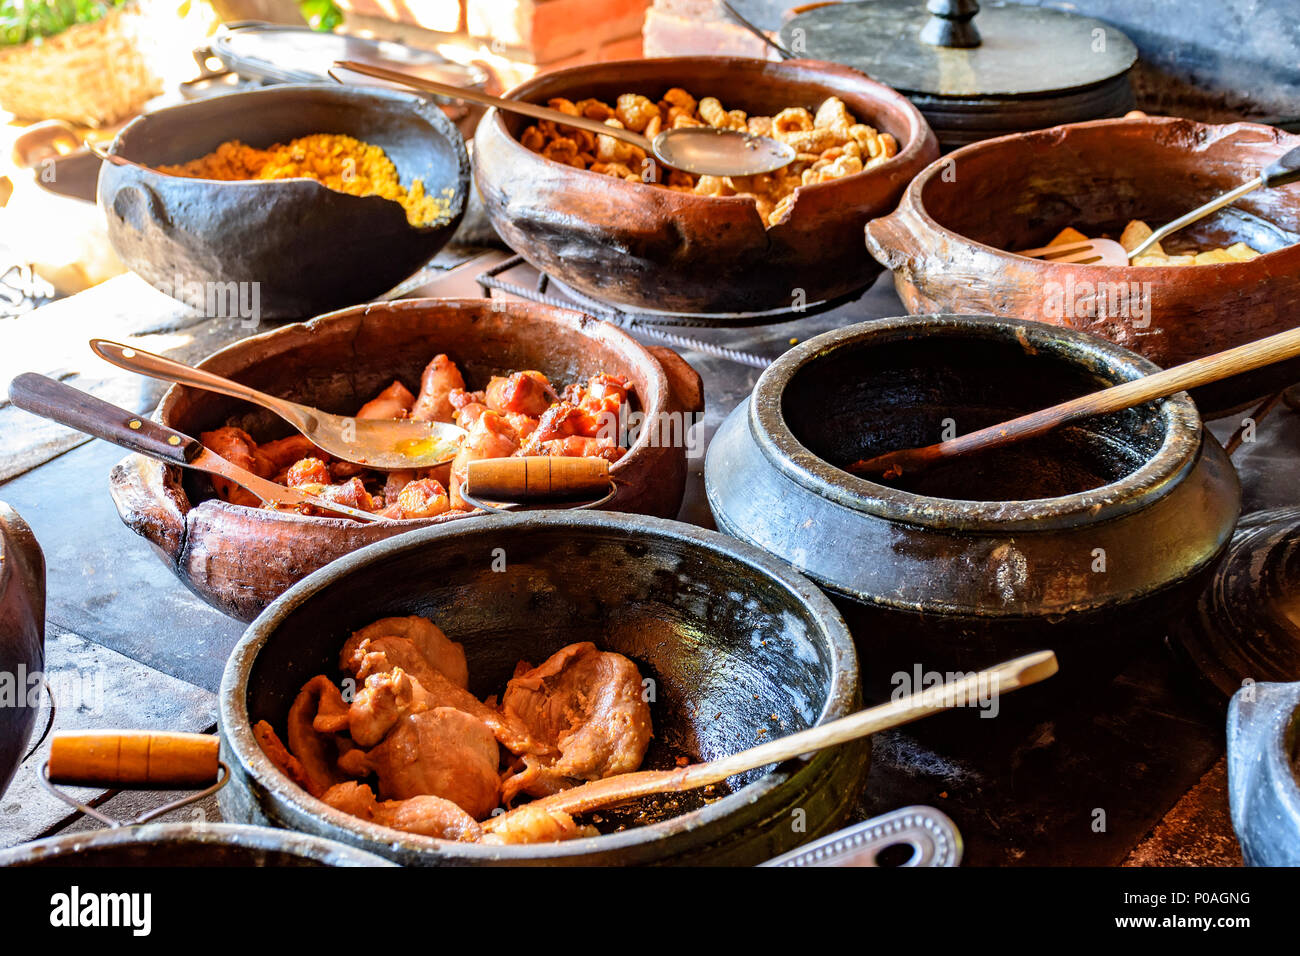 Comida brasileña tradicional fuera de la rgion fuera de Minas Gerais está preparando en vasijas de arcilla y en el viejo y popular estufa de leña Foto de stock